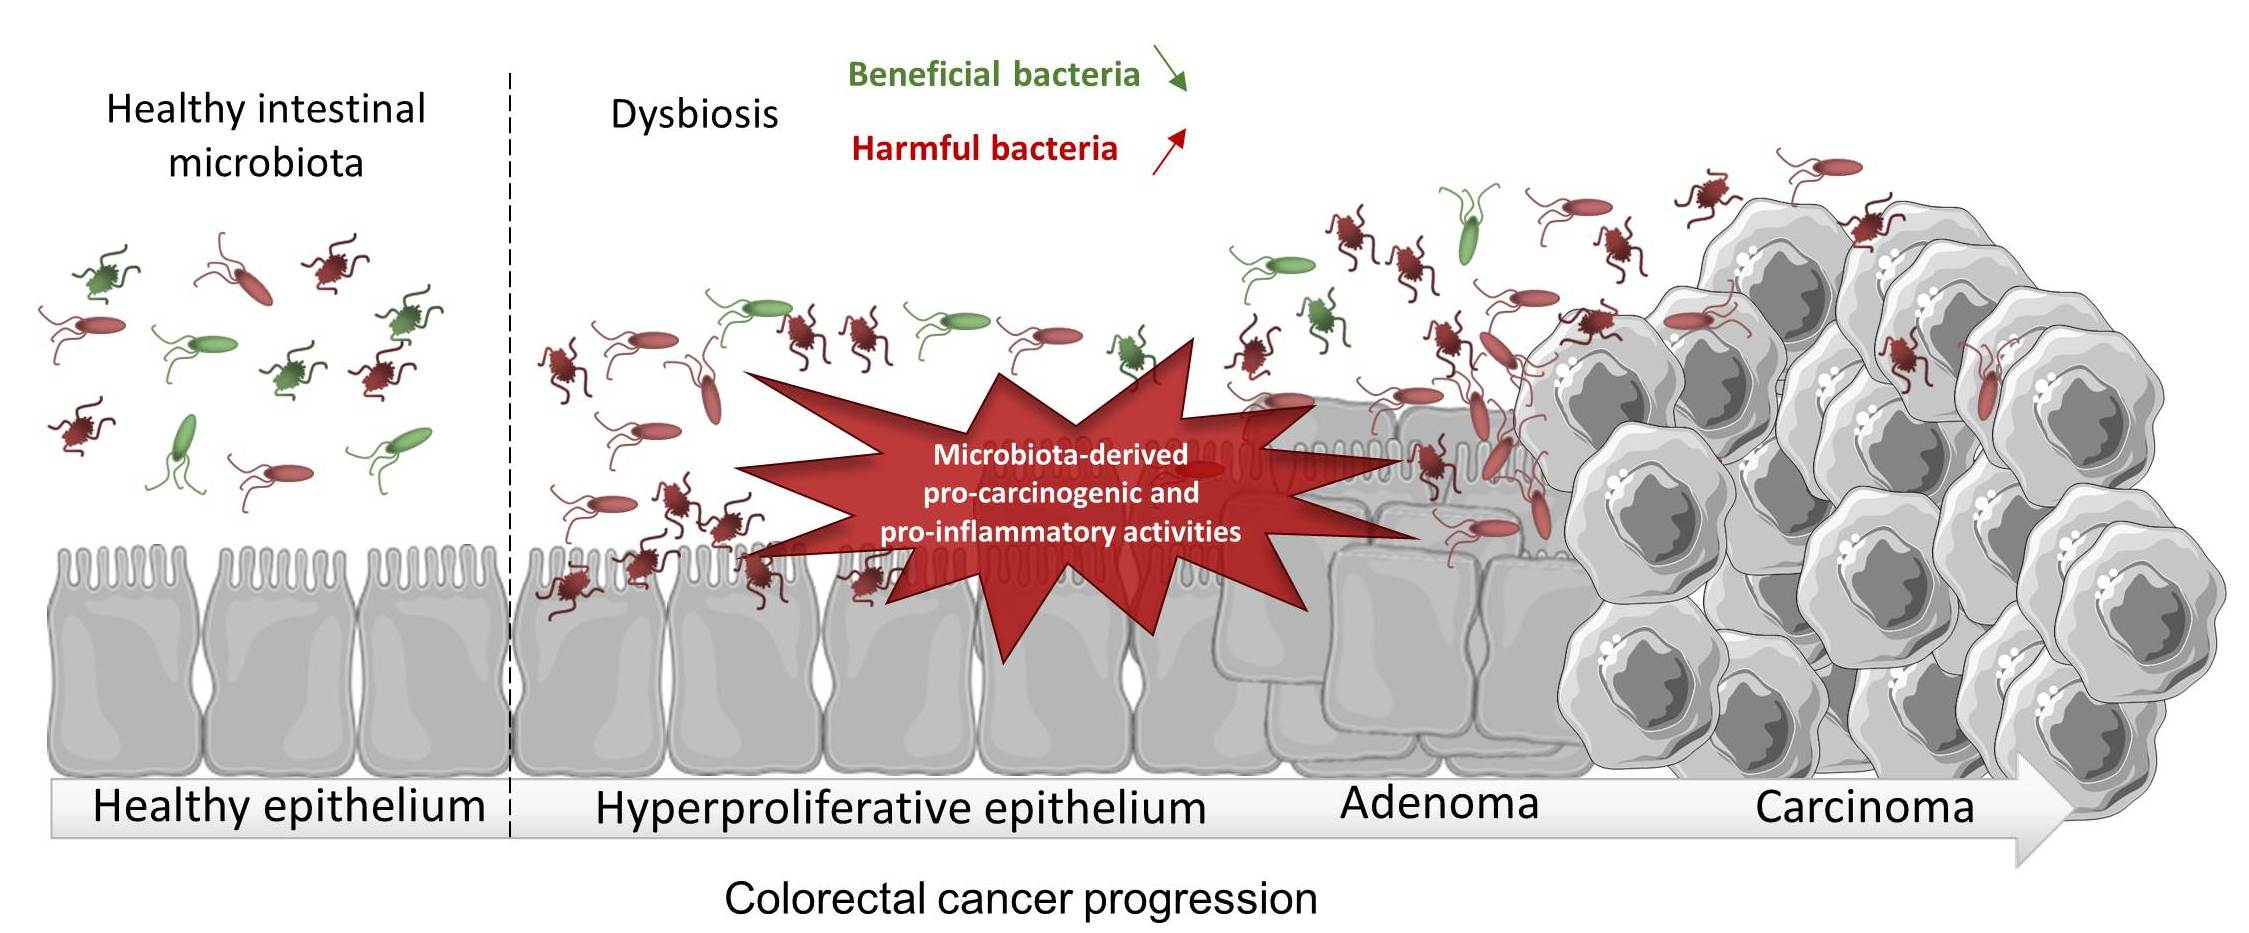 Colorectal cancer - progression of colon bacteria